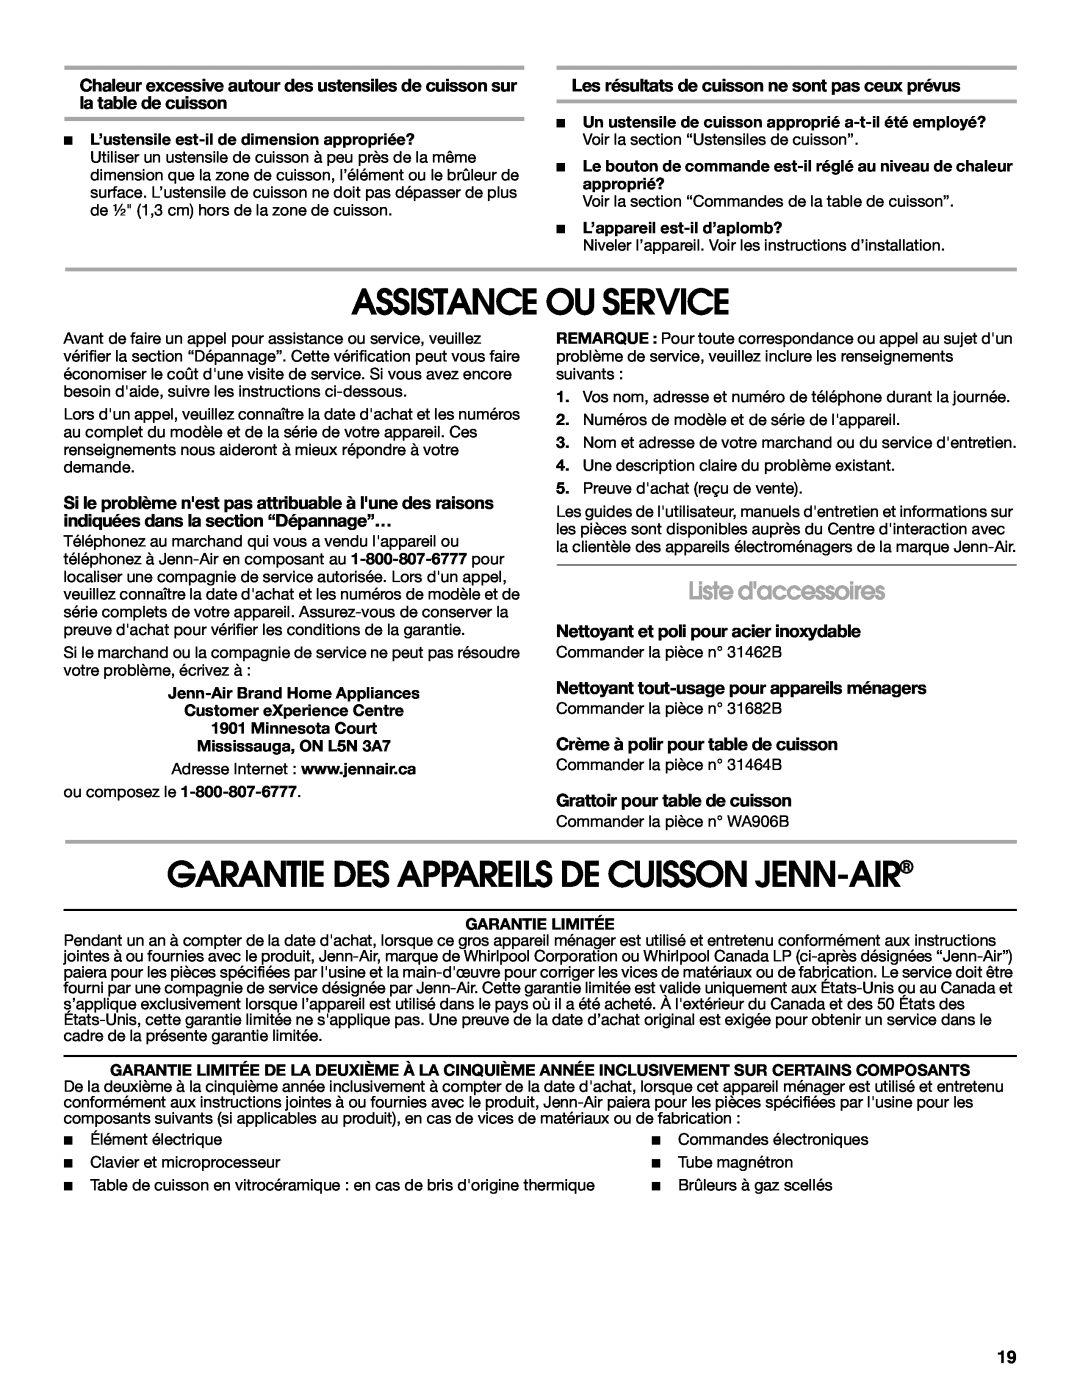 Jenn-Air W10204447A manual Assistance Ou Service, Garantie Des Appareils De Cuisson Jenn-Air, Liste daccessoires 